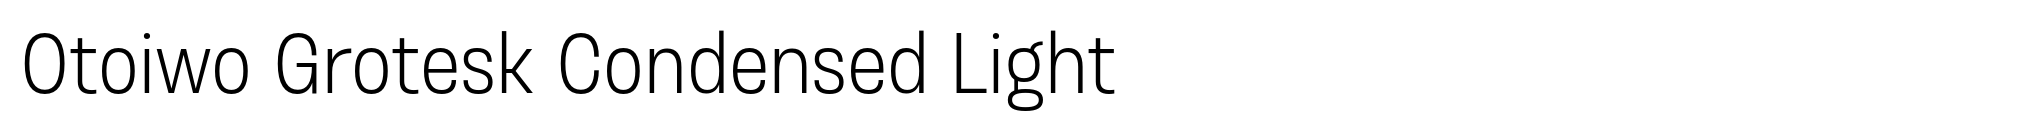 Otoiwo Grotesk Condensed Light image